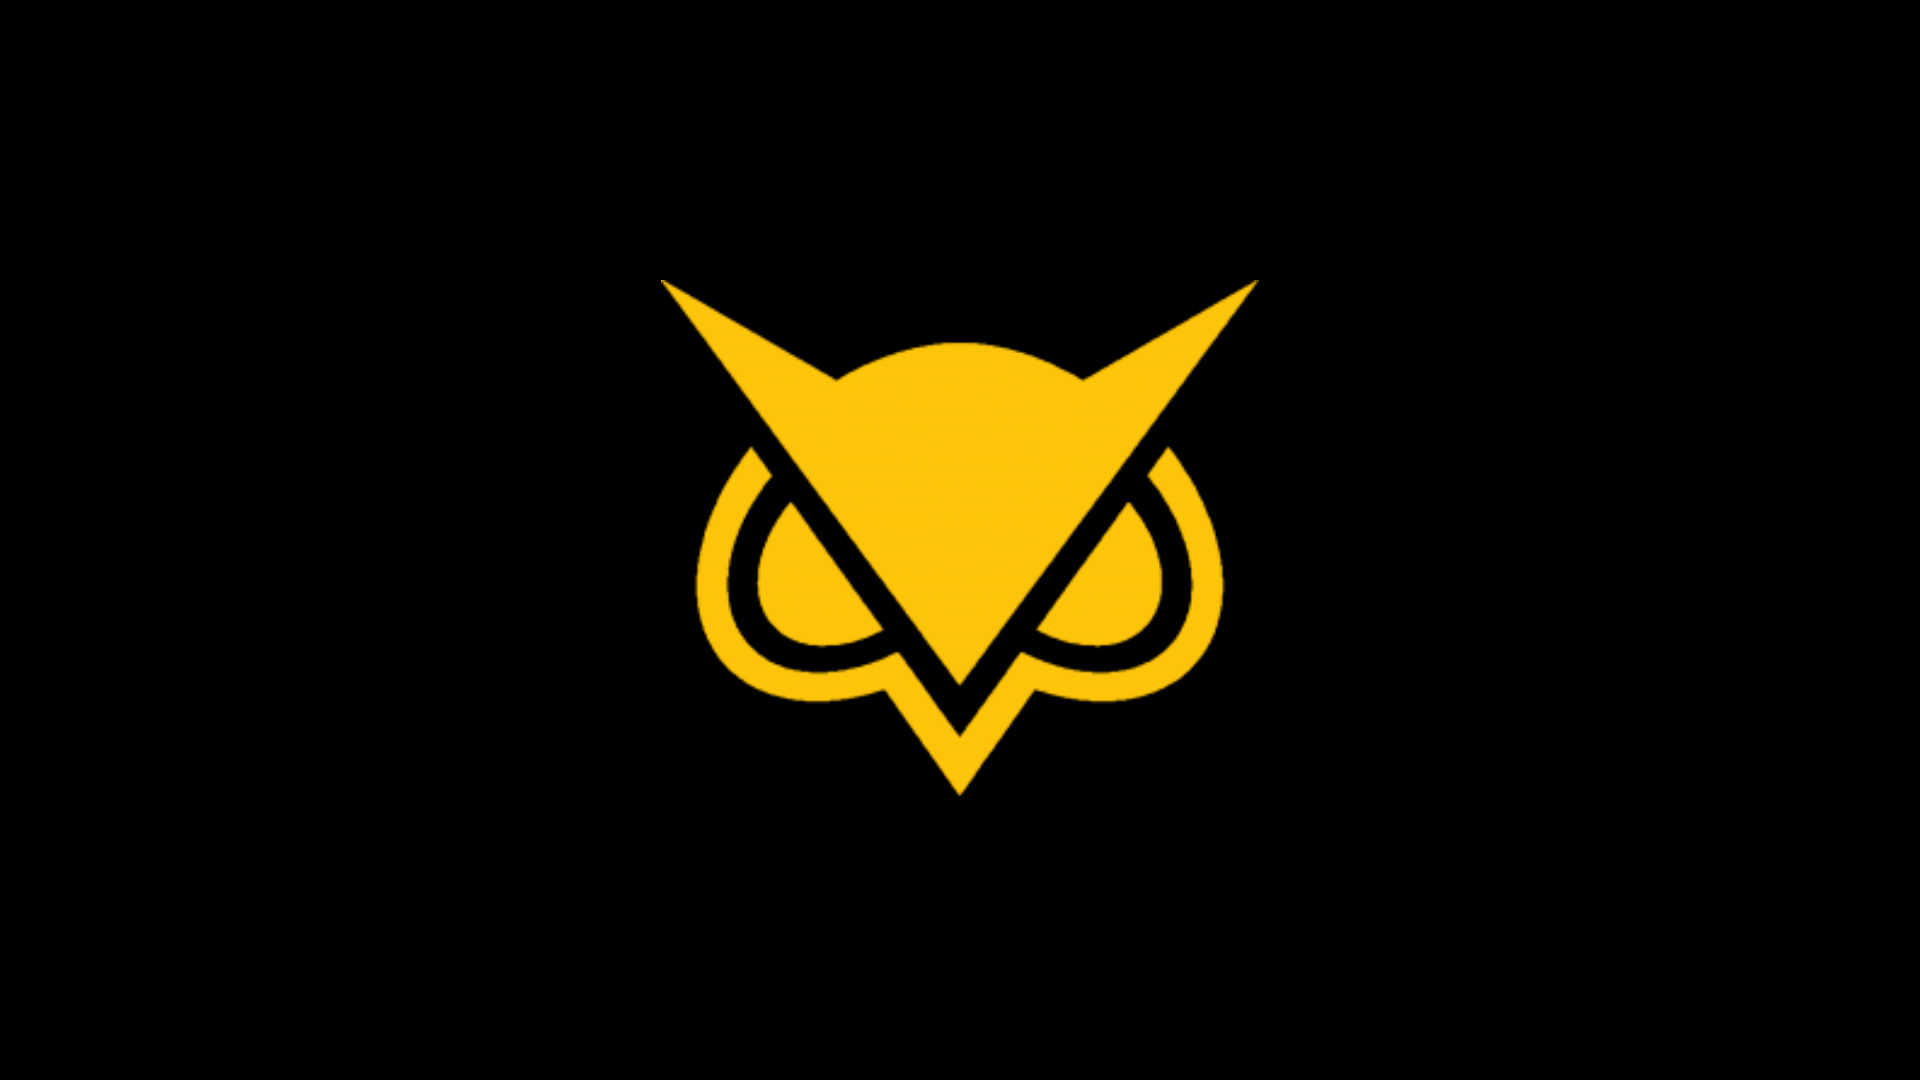 VanossGaming Gold Logo - Vanoss old Logos